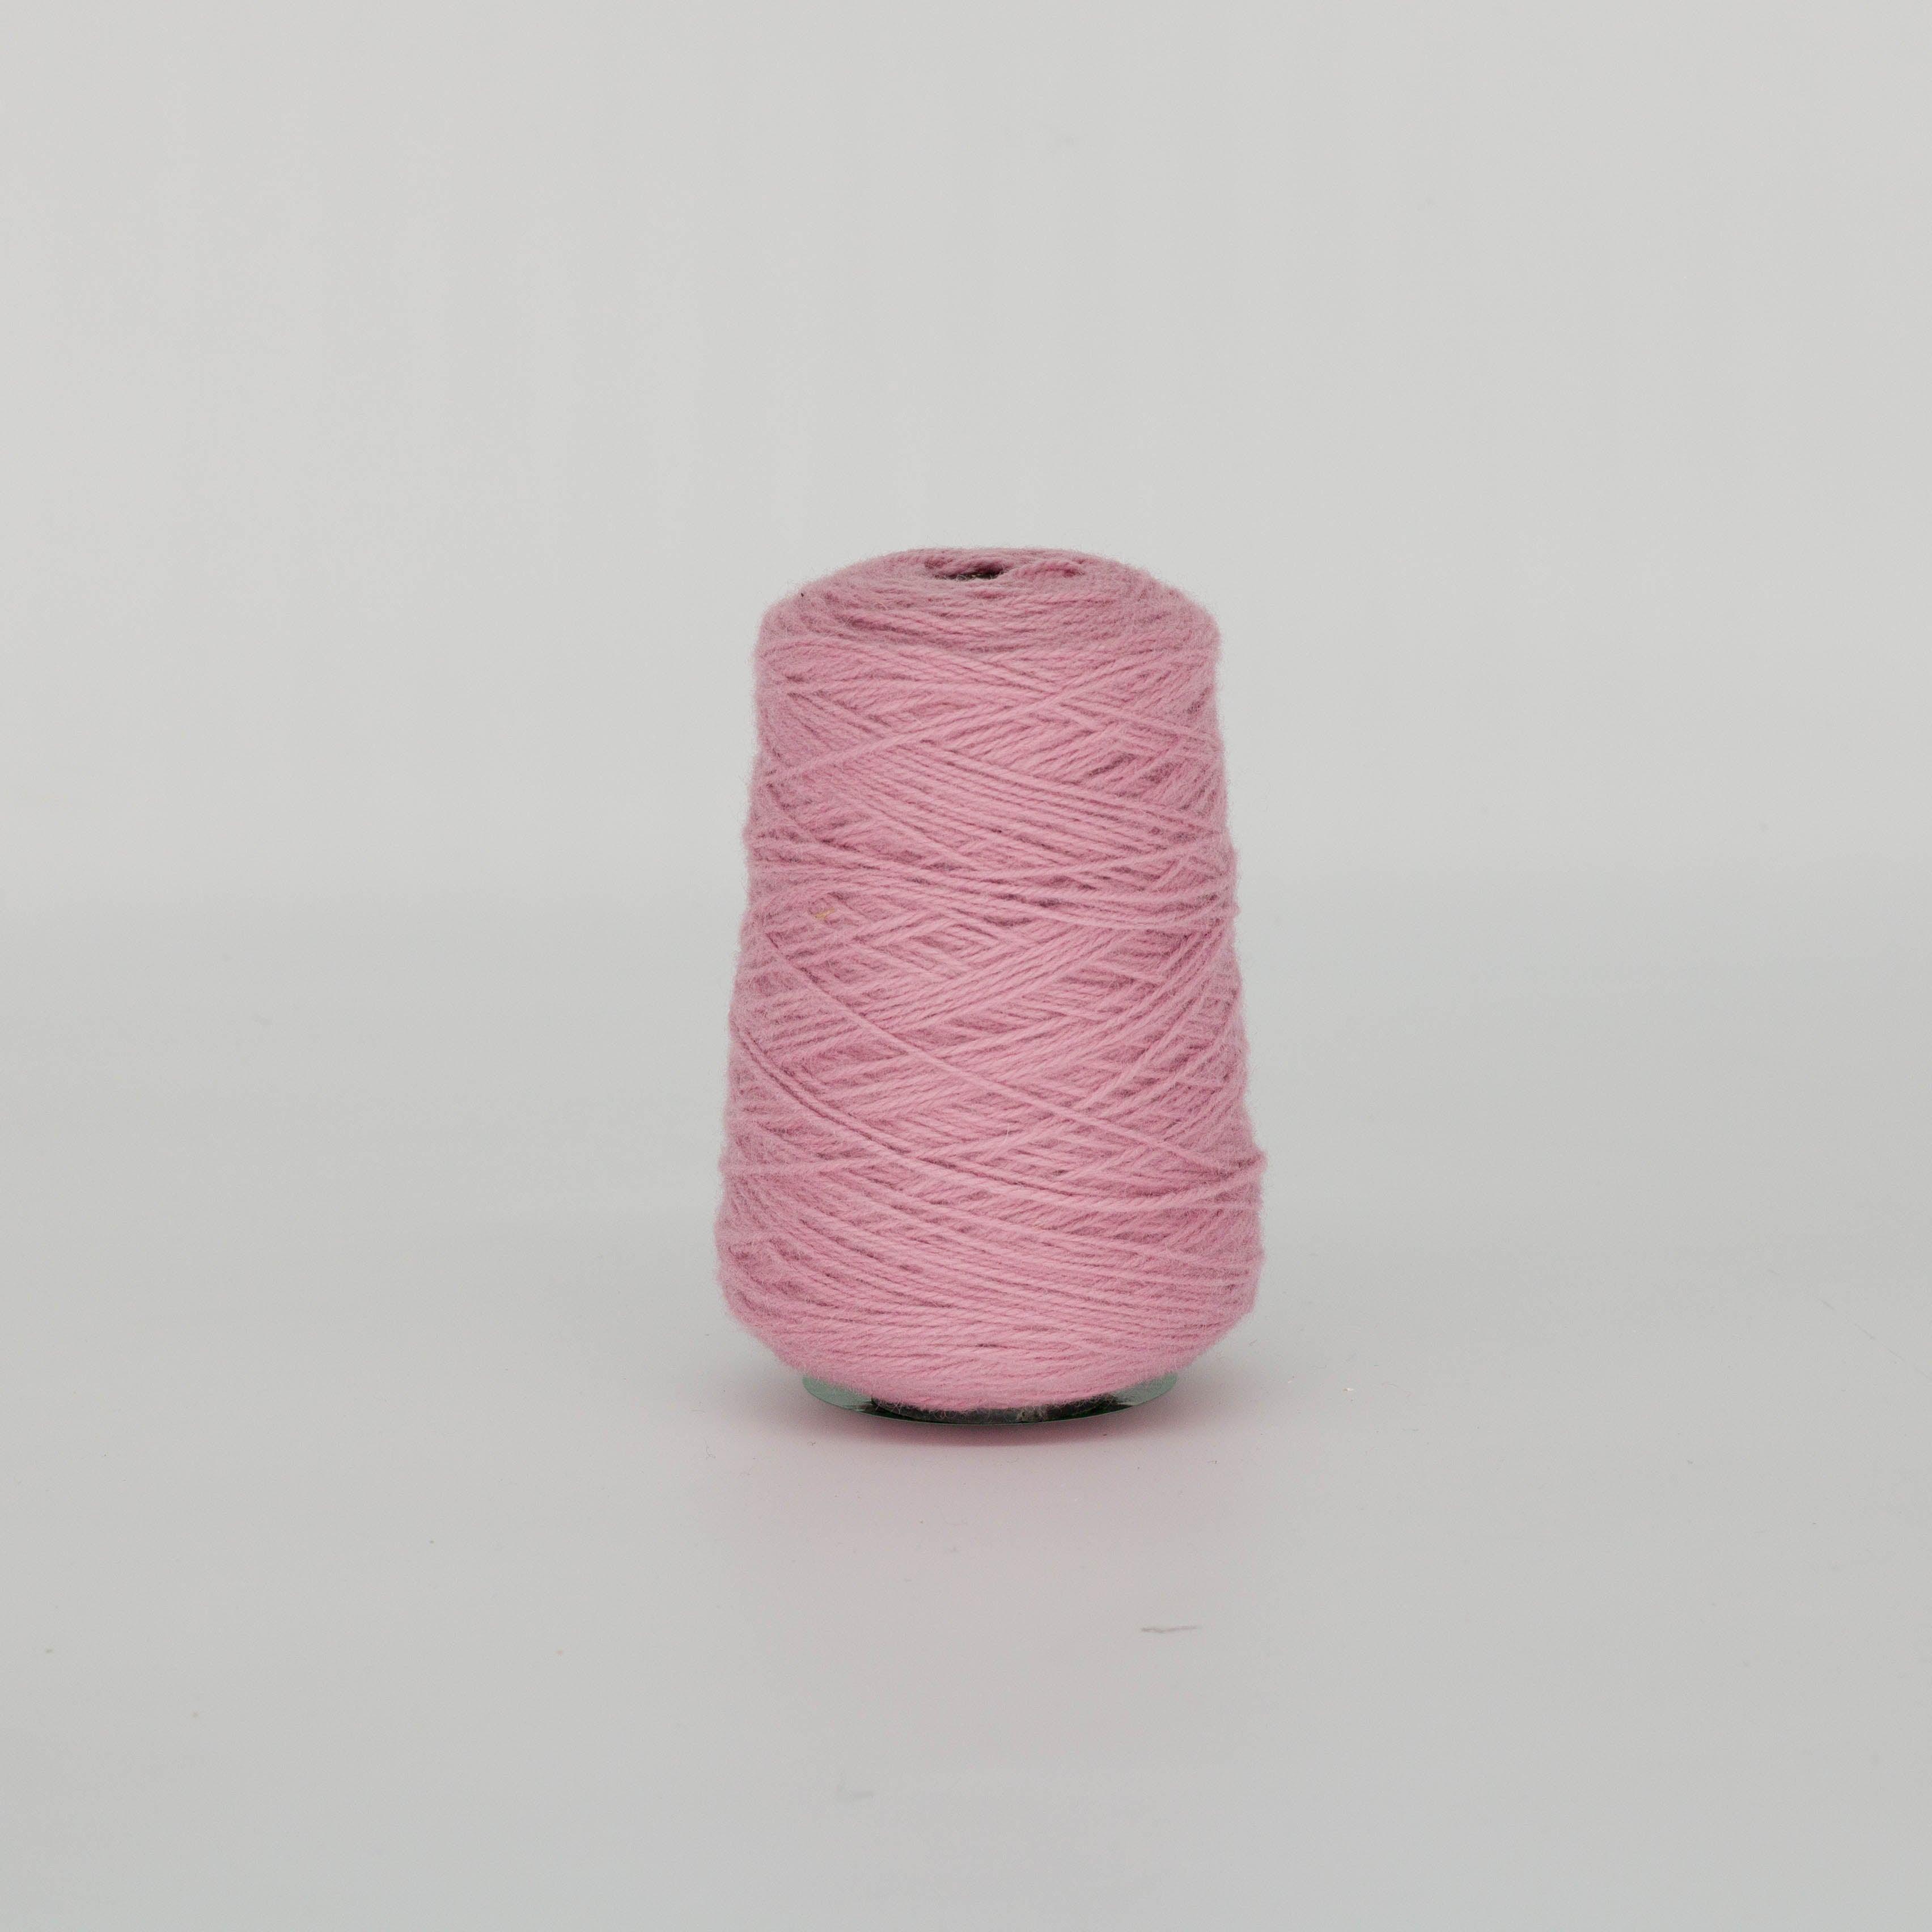 Amaranth pink 100% Wool Rug Yarn On Cones (517) - Tuftingshop